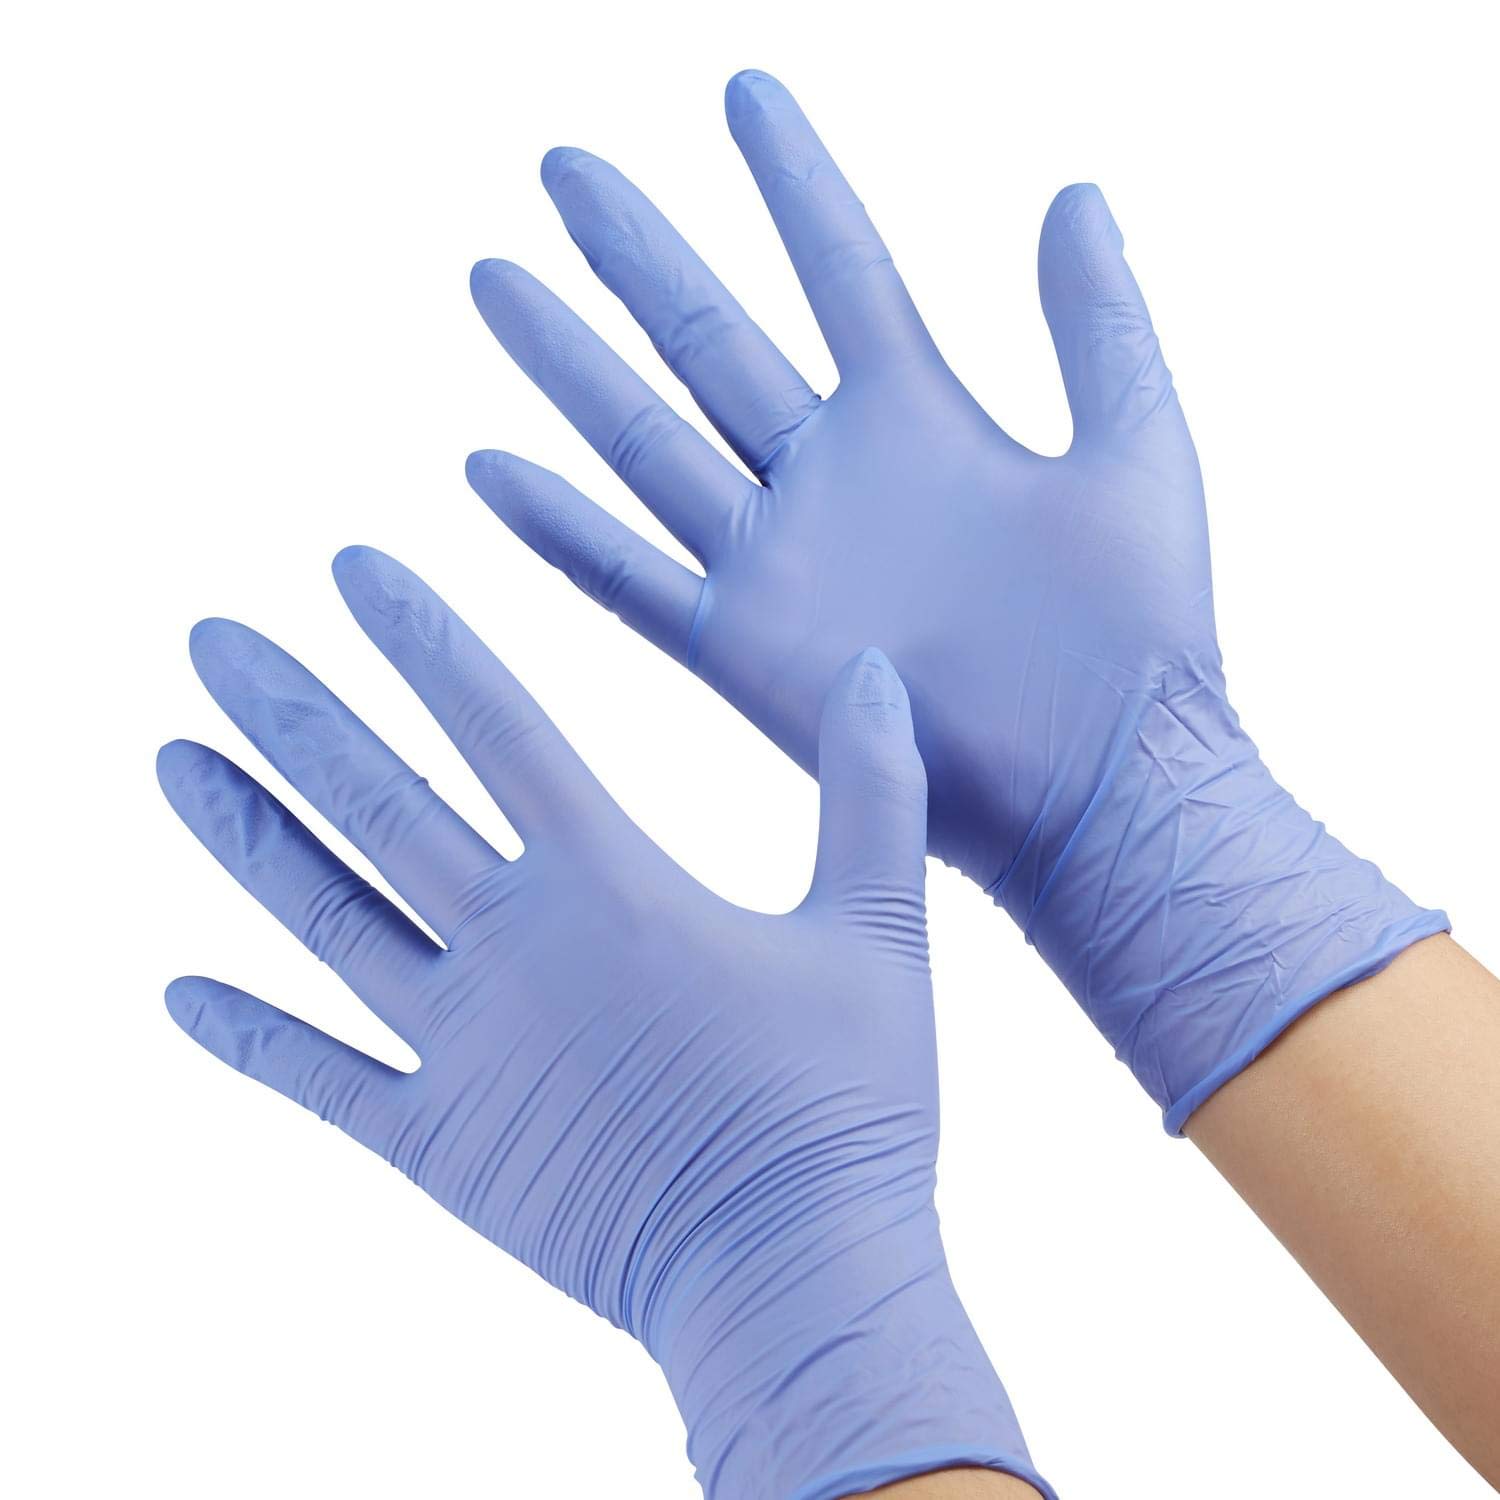 
                                    
                                Coronavirus, i migliori guanti per proteggere le mani